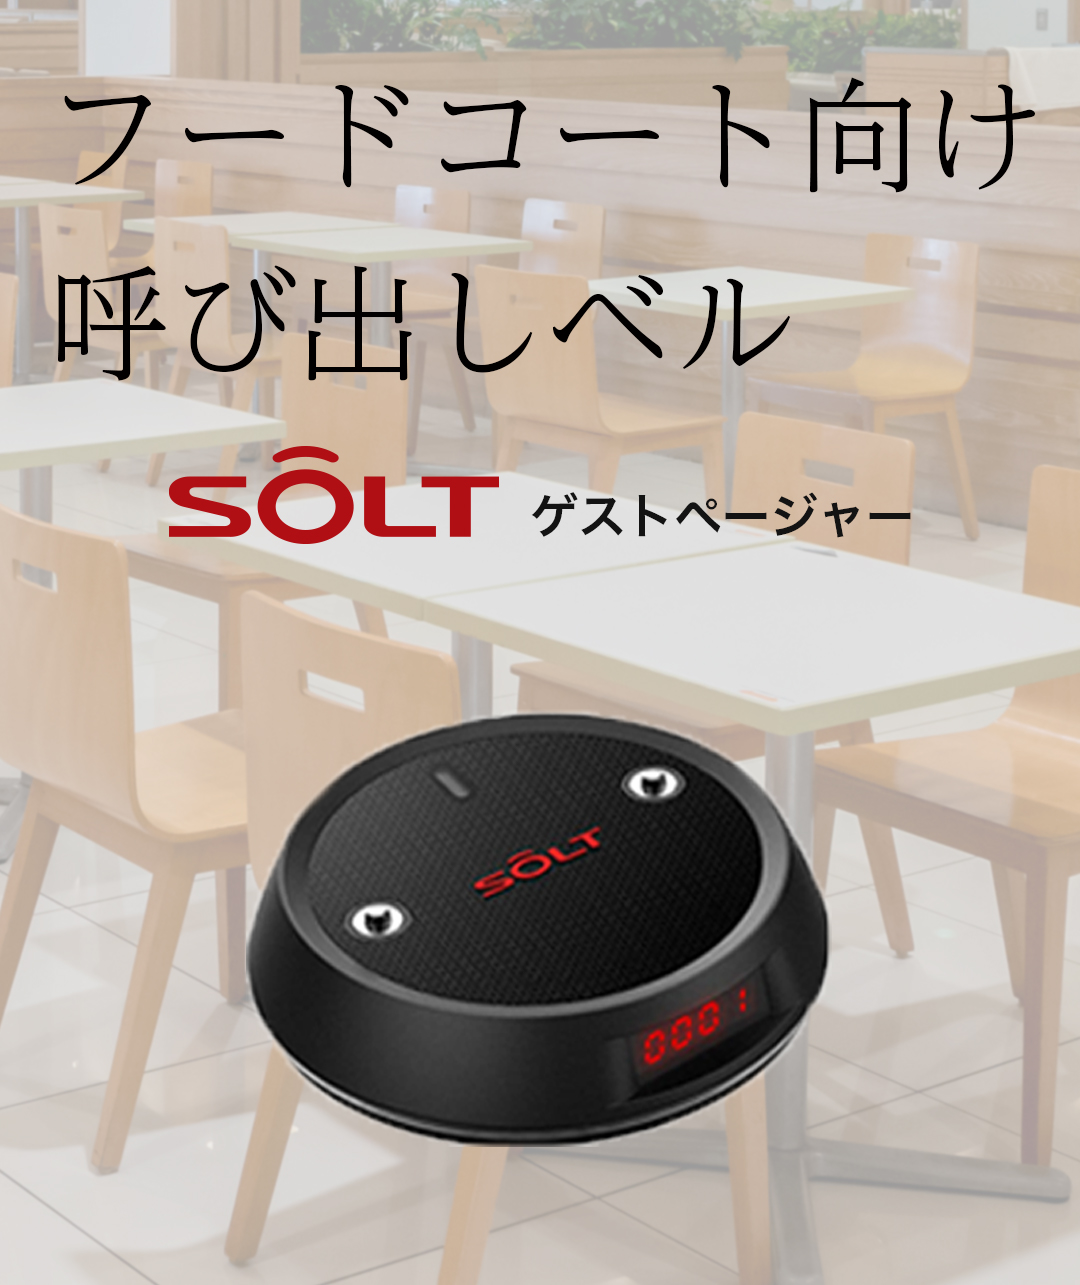 フードコート・クリニック用 | SOLT-JAPAN 呼び出しベル【公式】